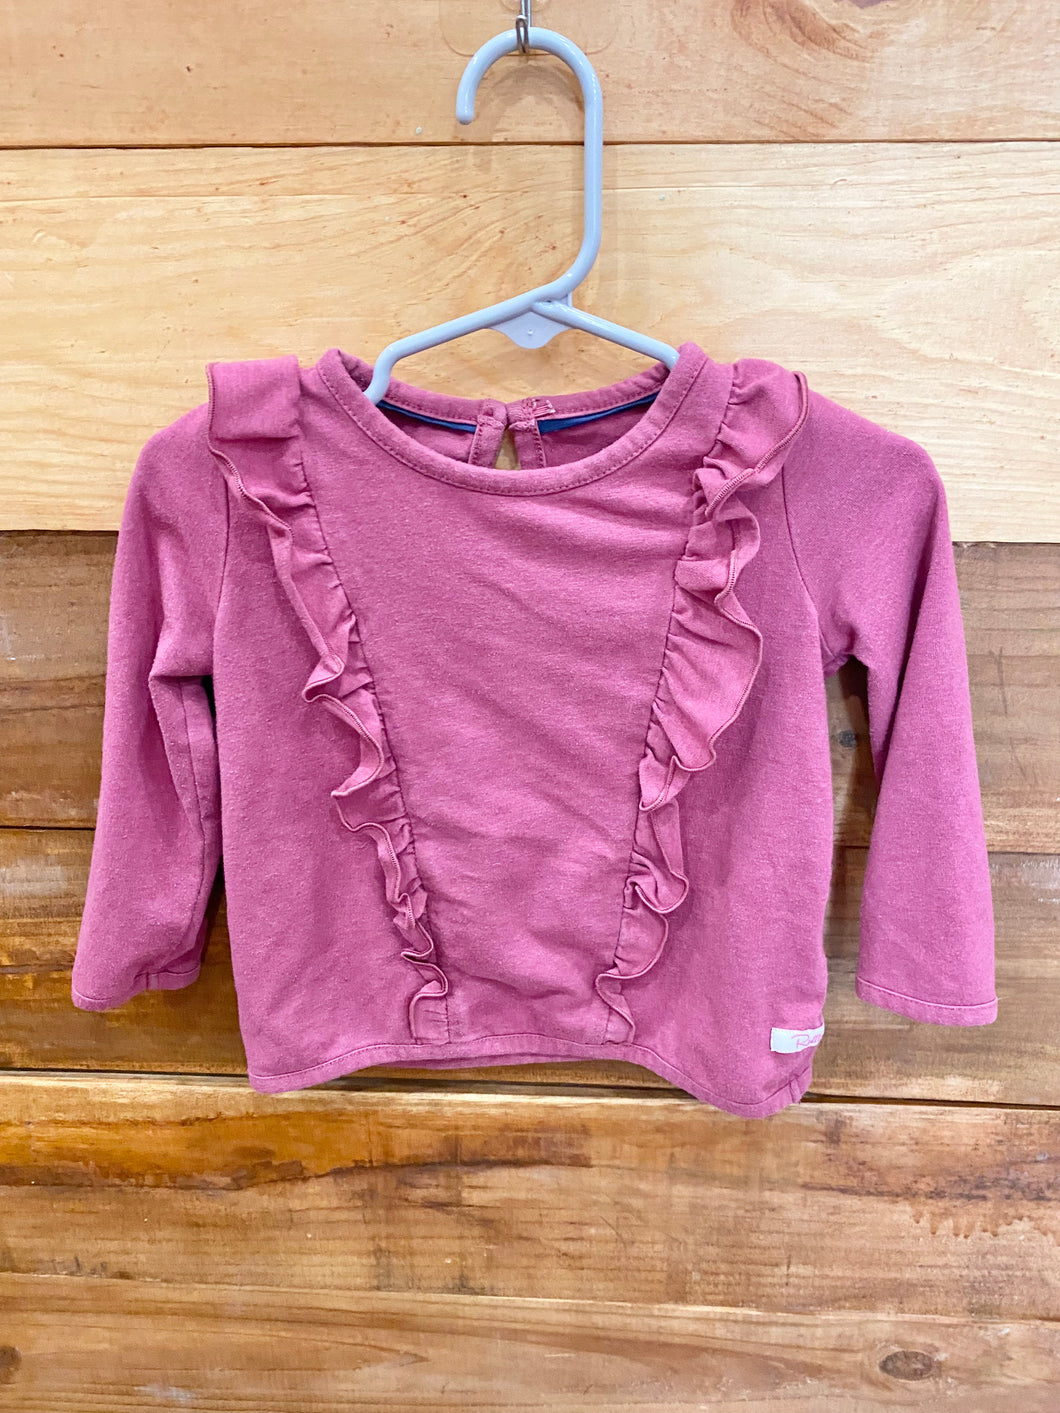 Ruffle Butts Purple Shirt Size 12-18m